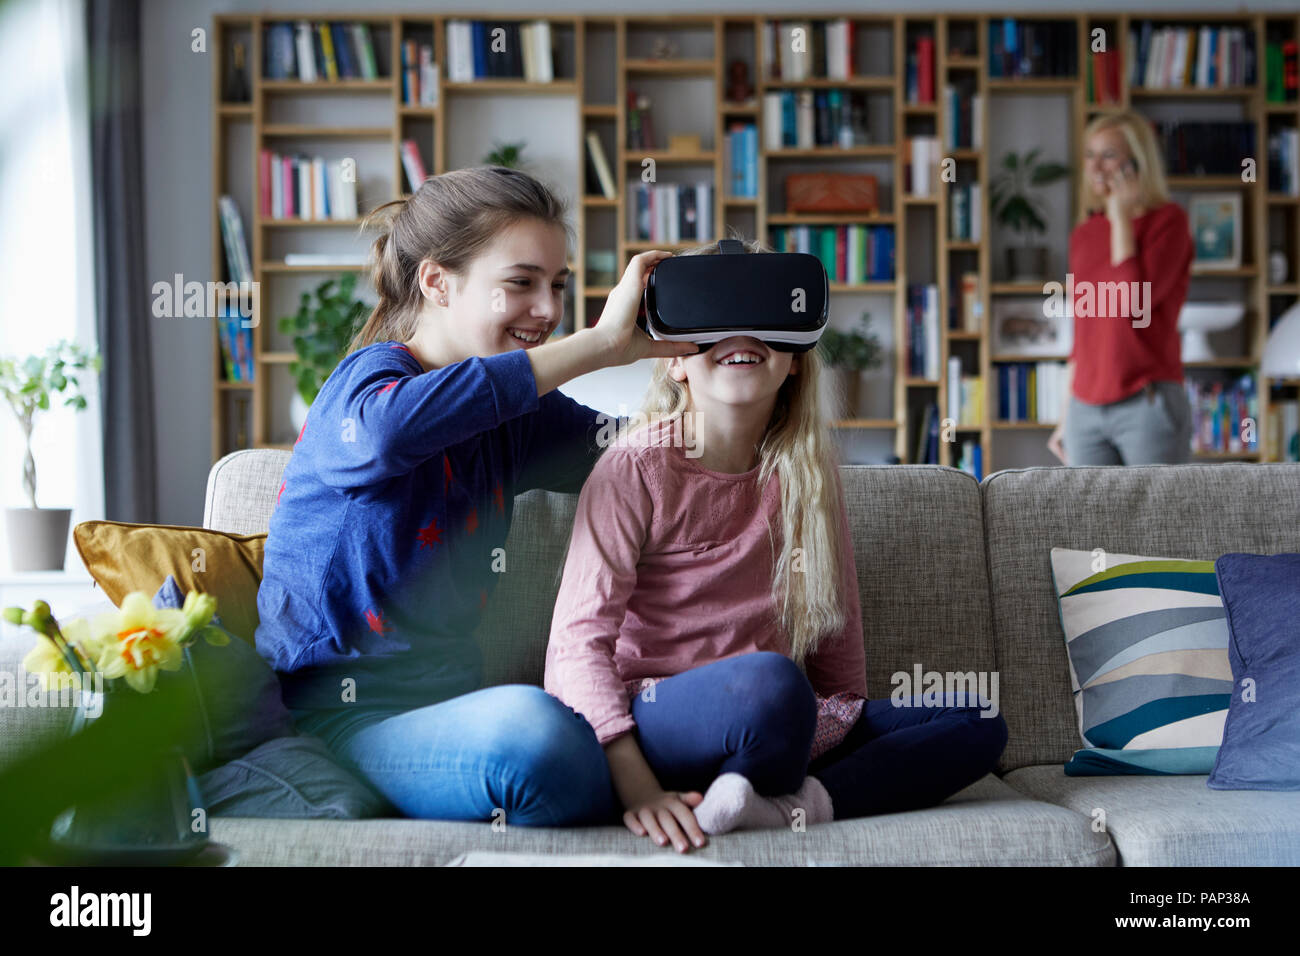 Hermanas sentada en un sofá, jugar con gafas VR Foto de stock